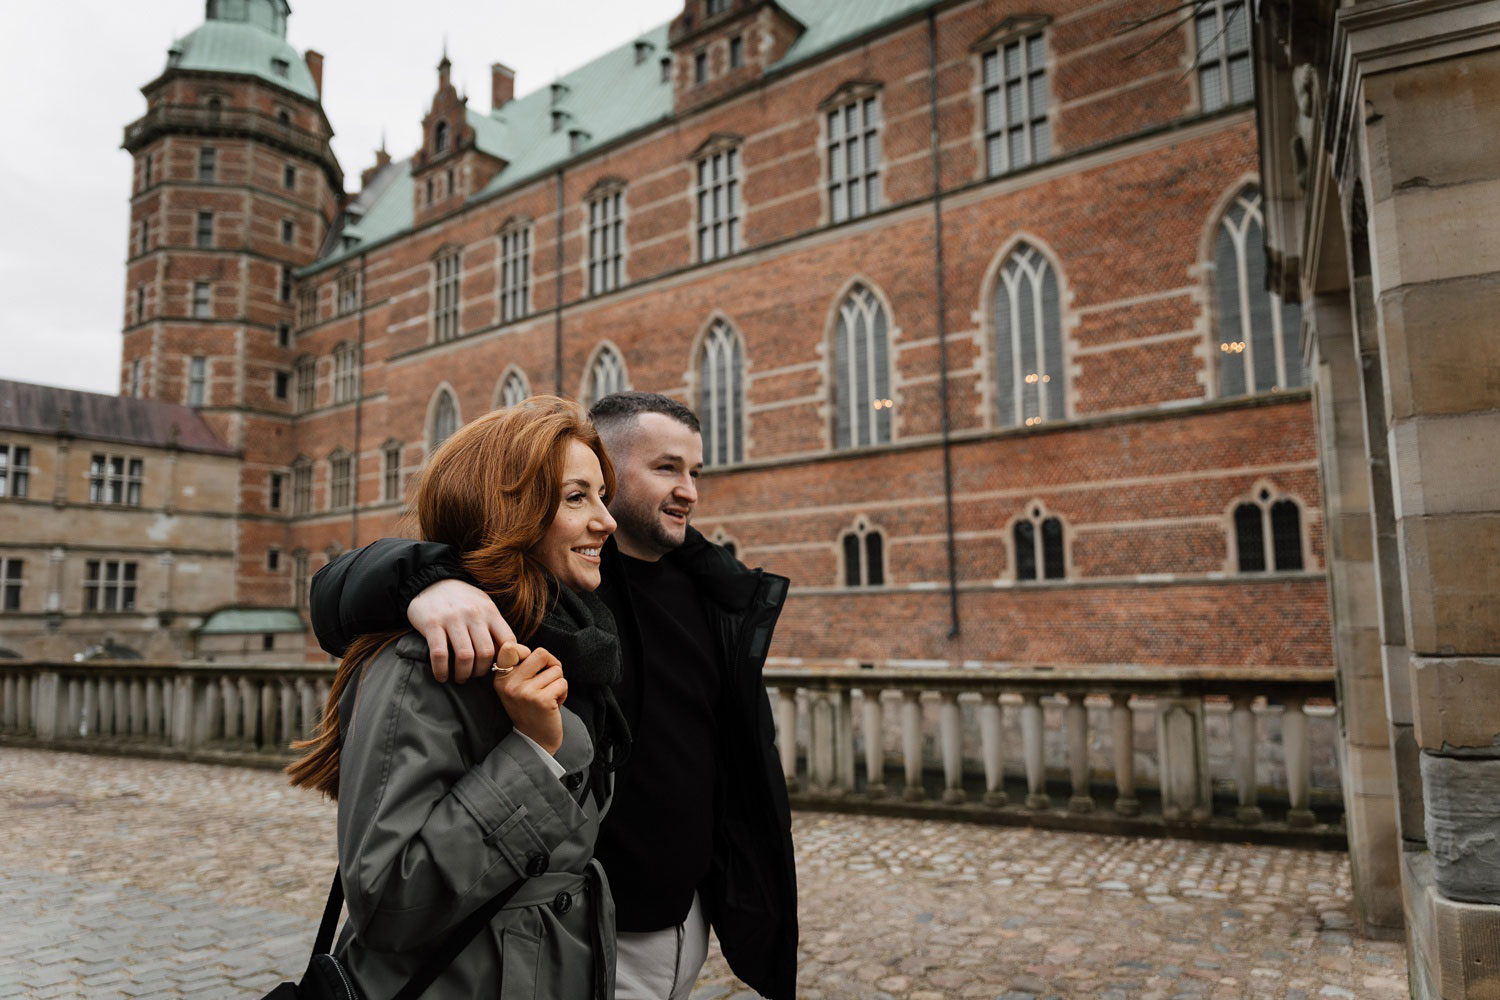 Romantic surprise proposal at Frederiksborg Castle